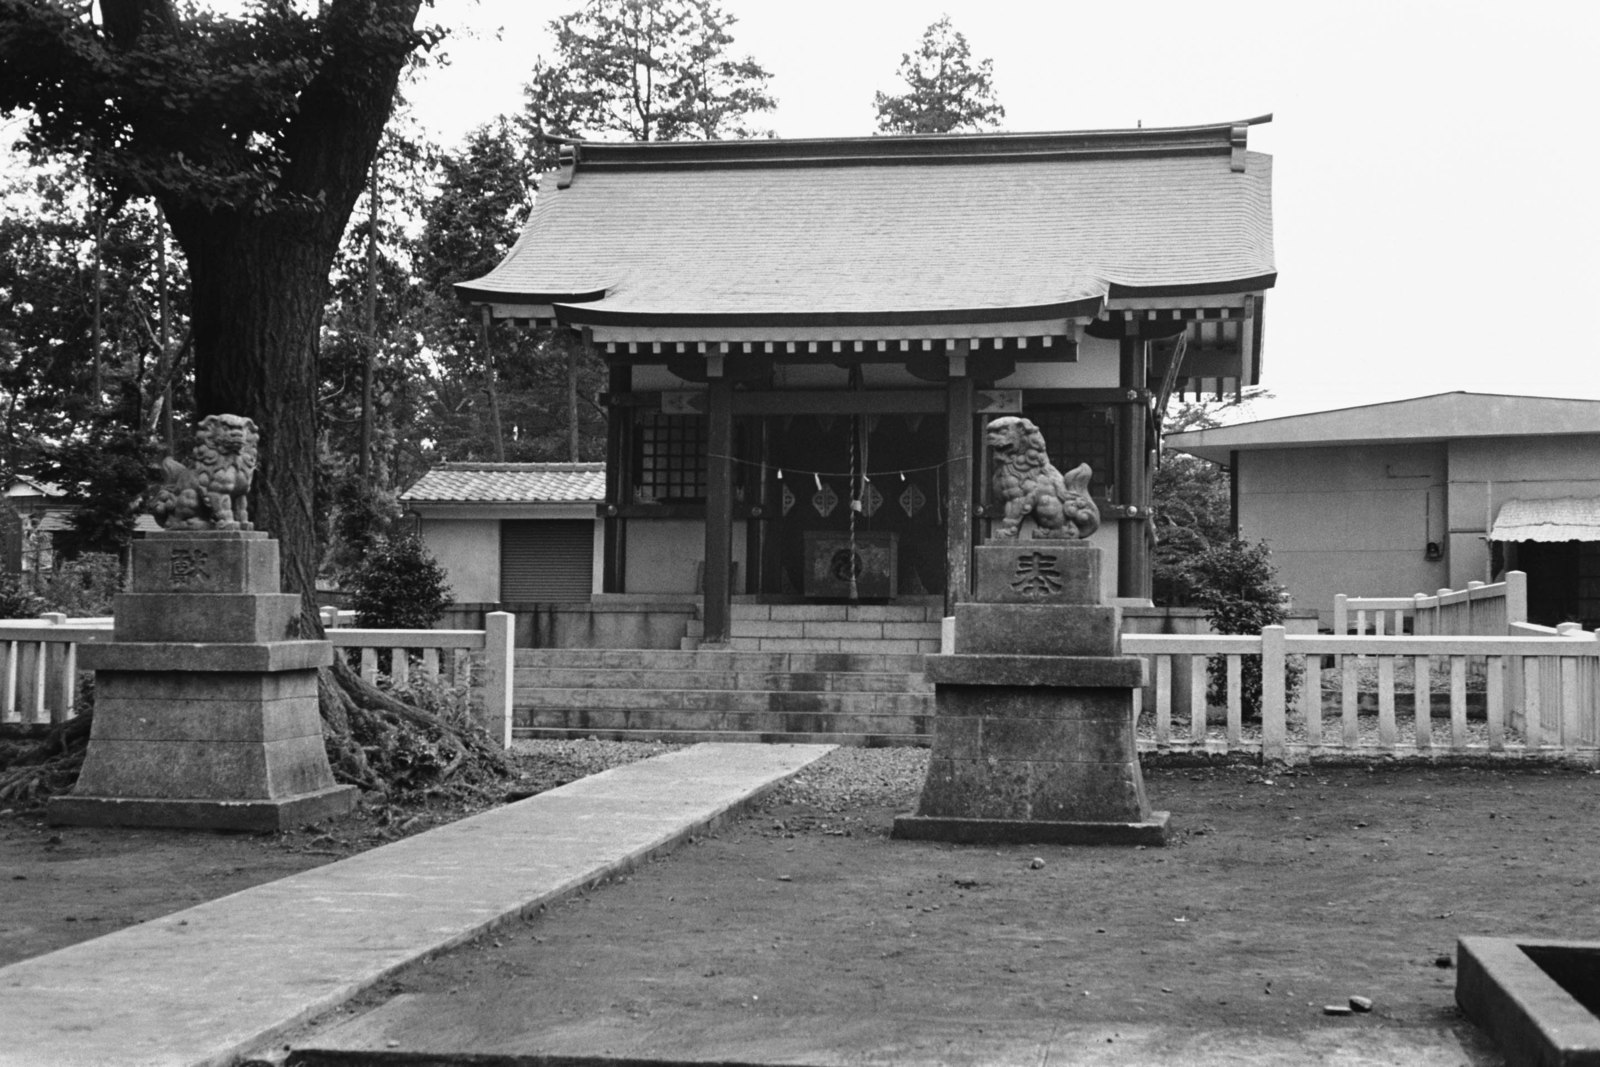 粕谷八幡神社